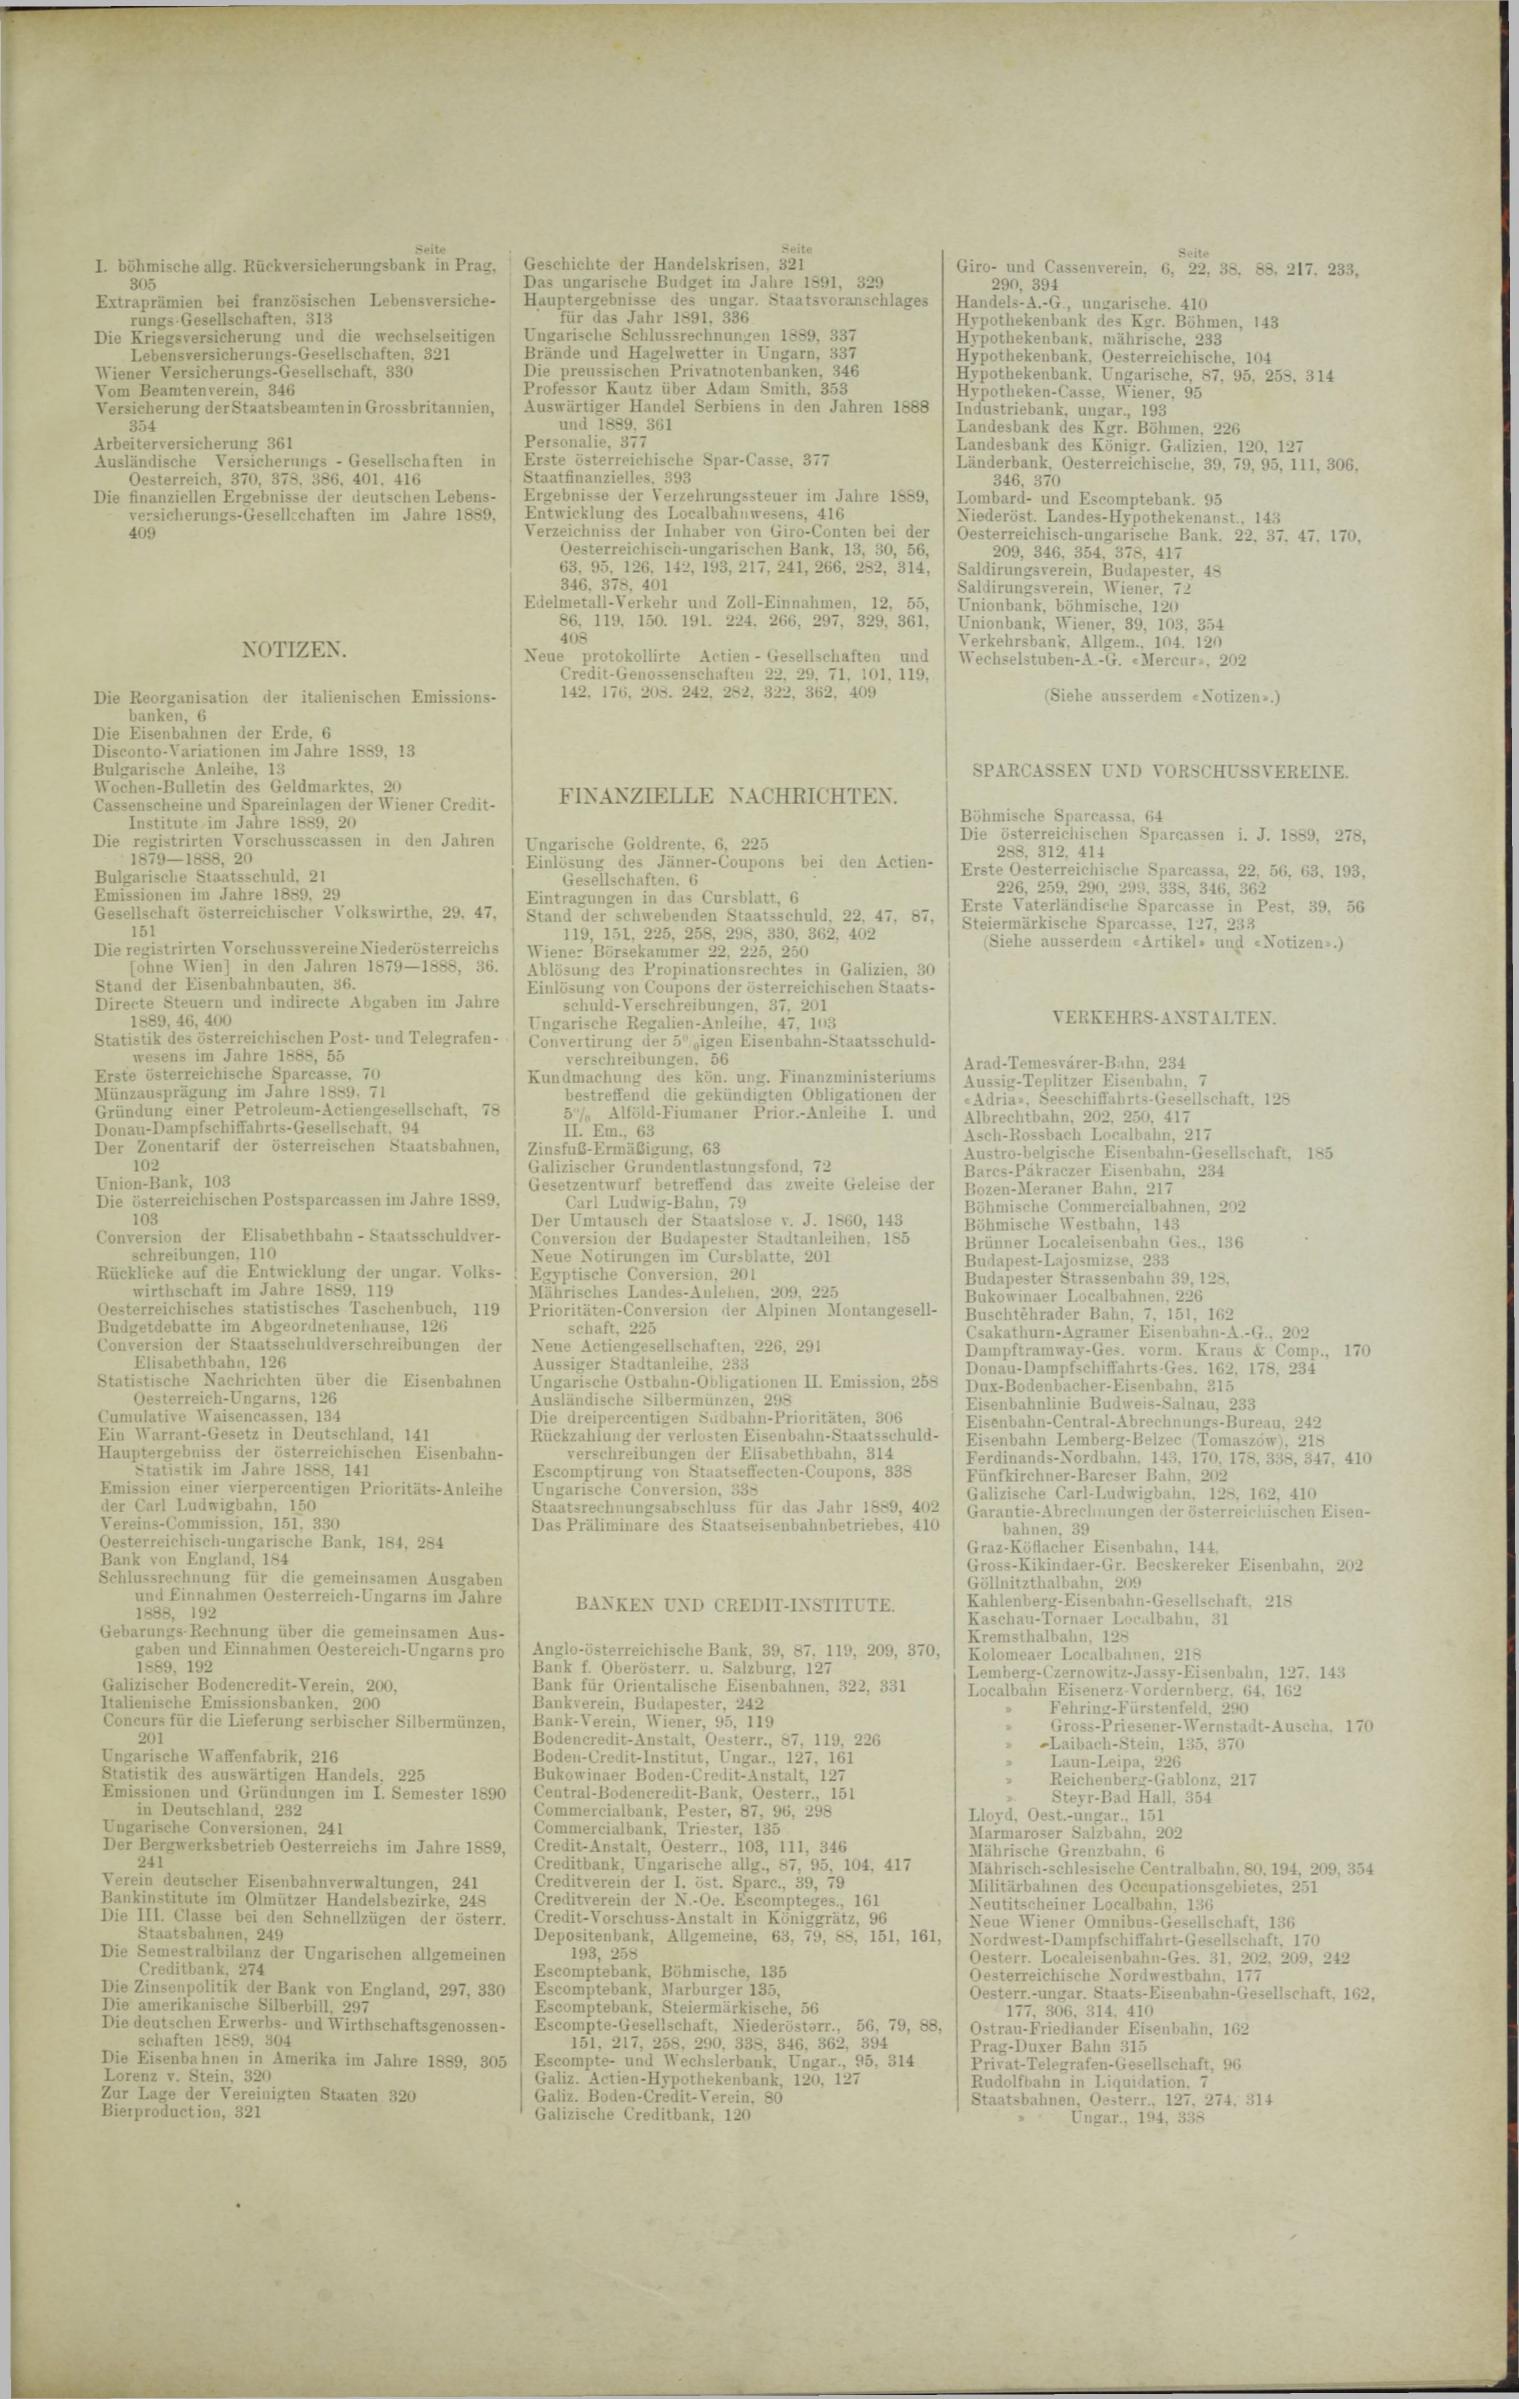 Der Tresor 18.12.1890 - Seite 11